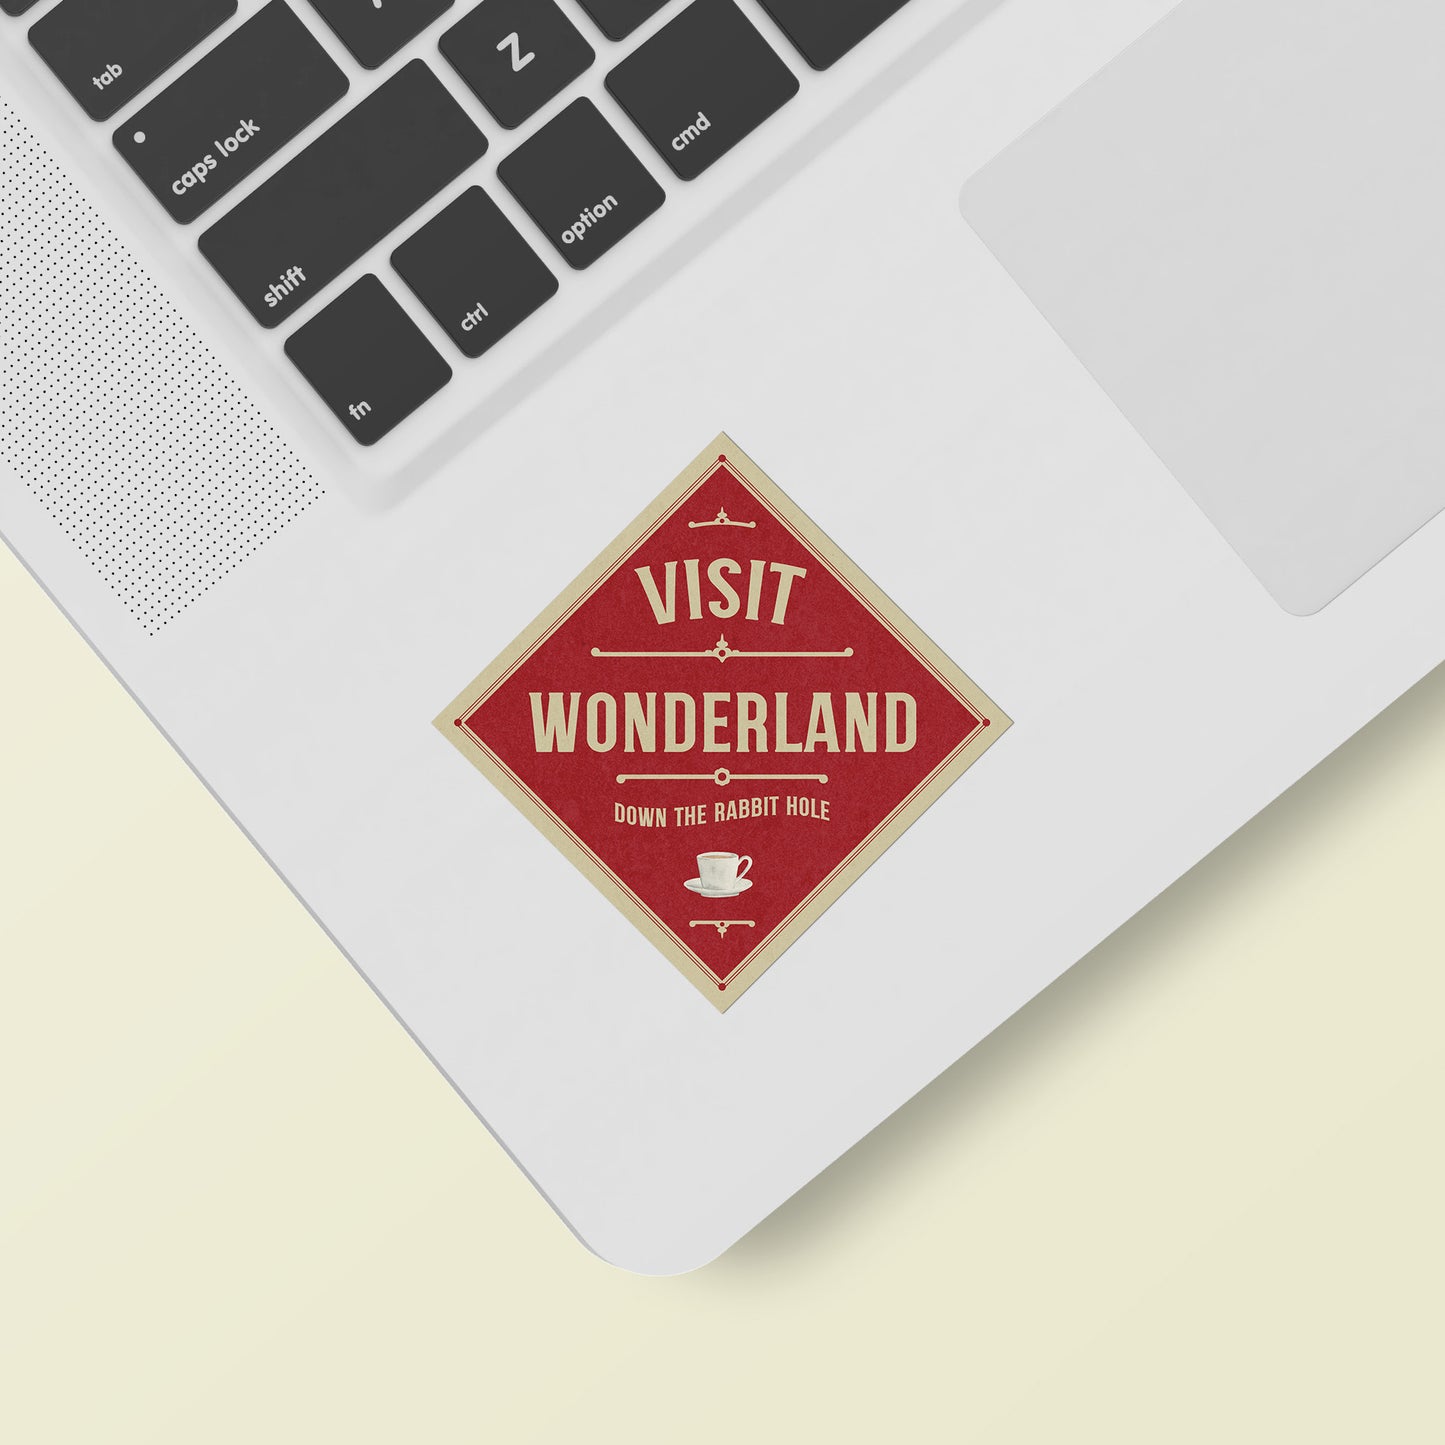 Wonderland Vintage Travel Label Vinyl Sticker